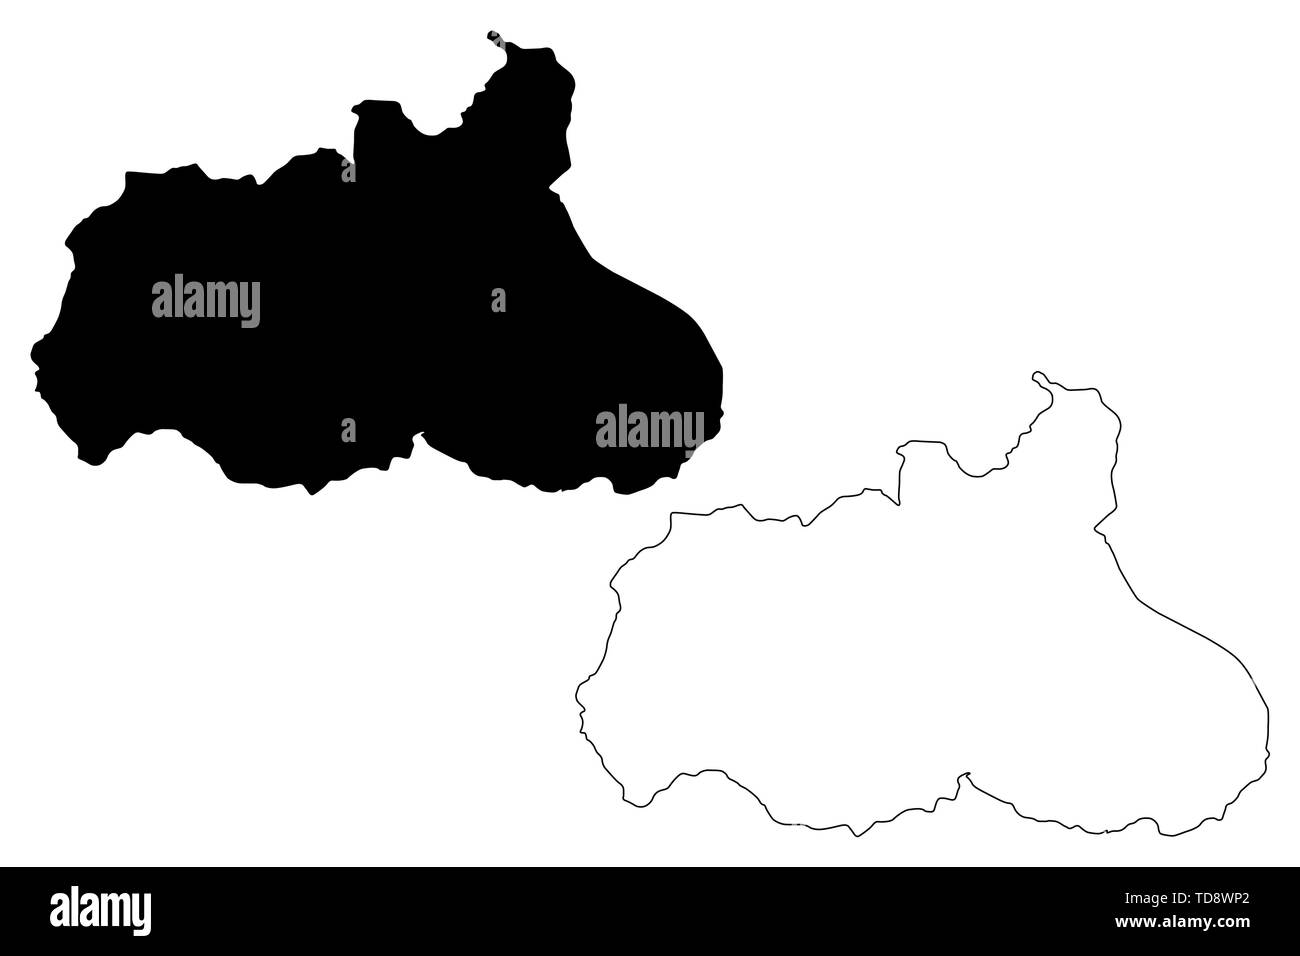 Provinz Tungurahua (Republik Ecuador, Provinzen von Ecuador) Karte Vektor-illustration, kritzeln Skizze Tungurahua Karte Stock Vektor